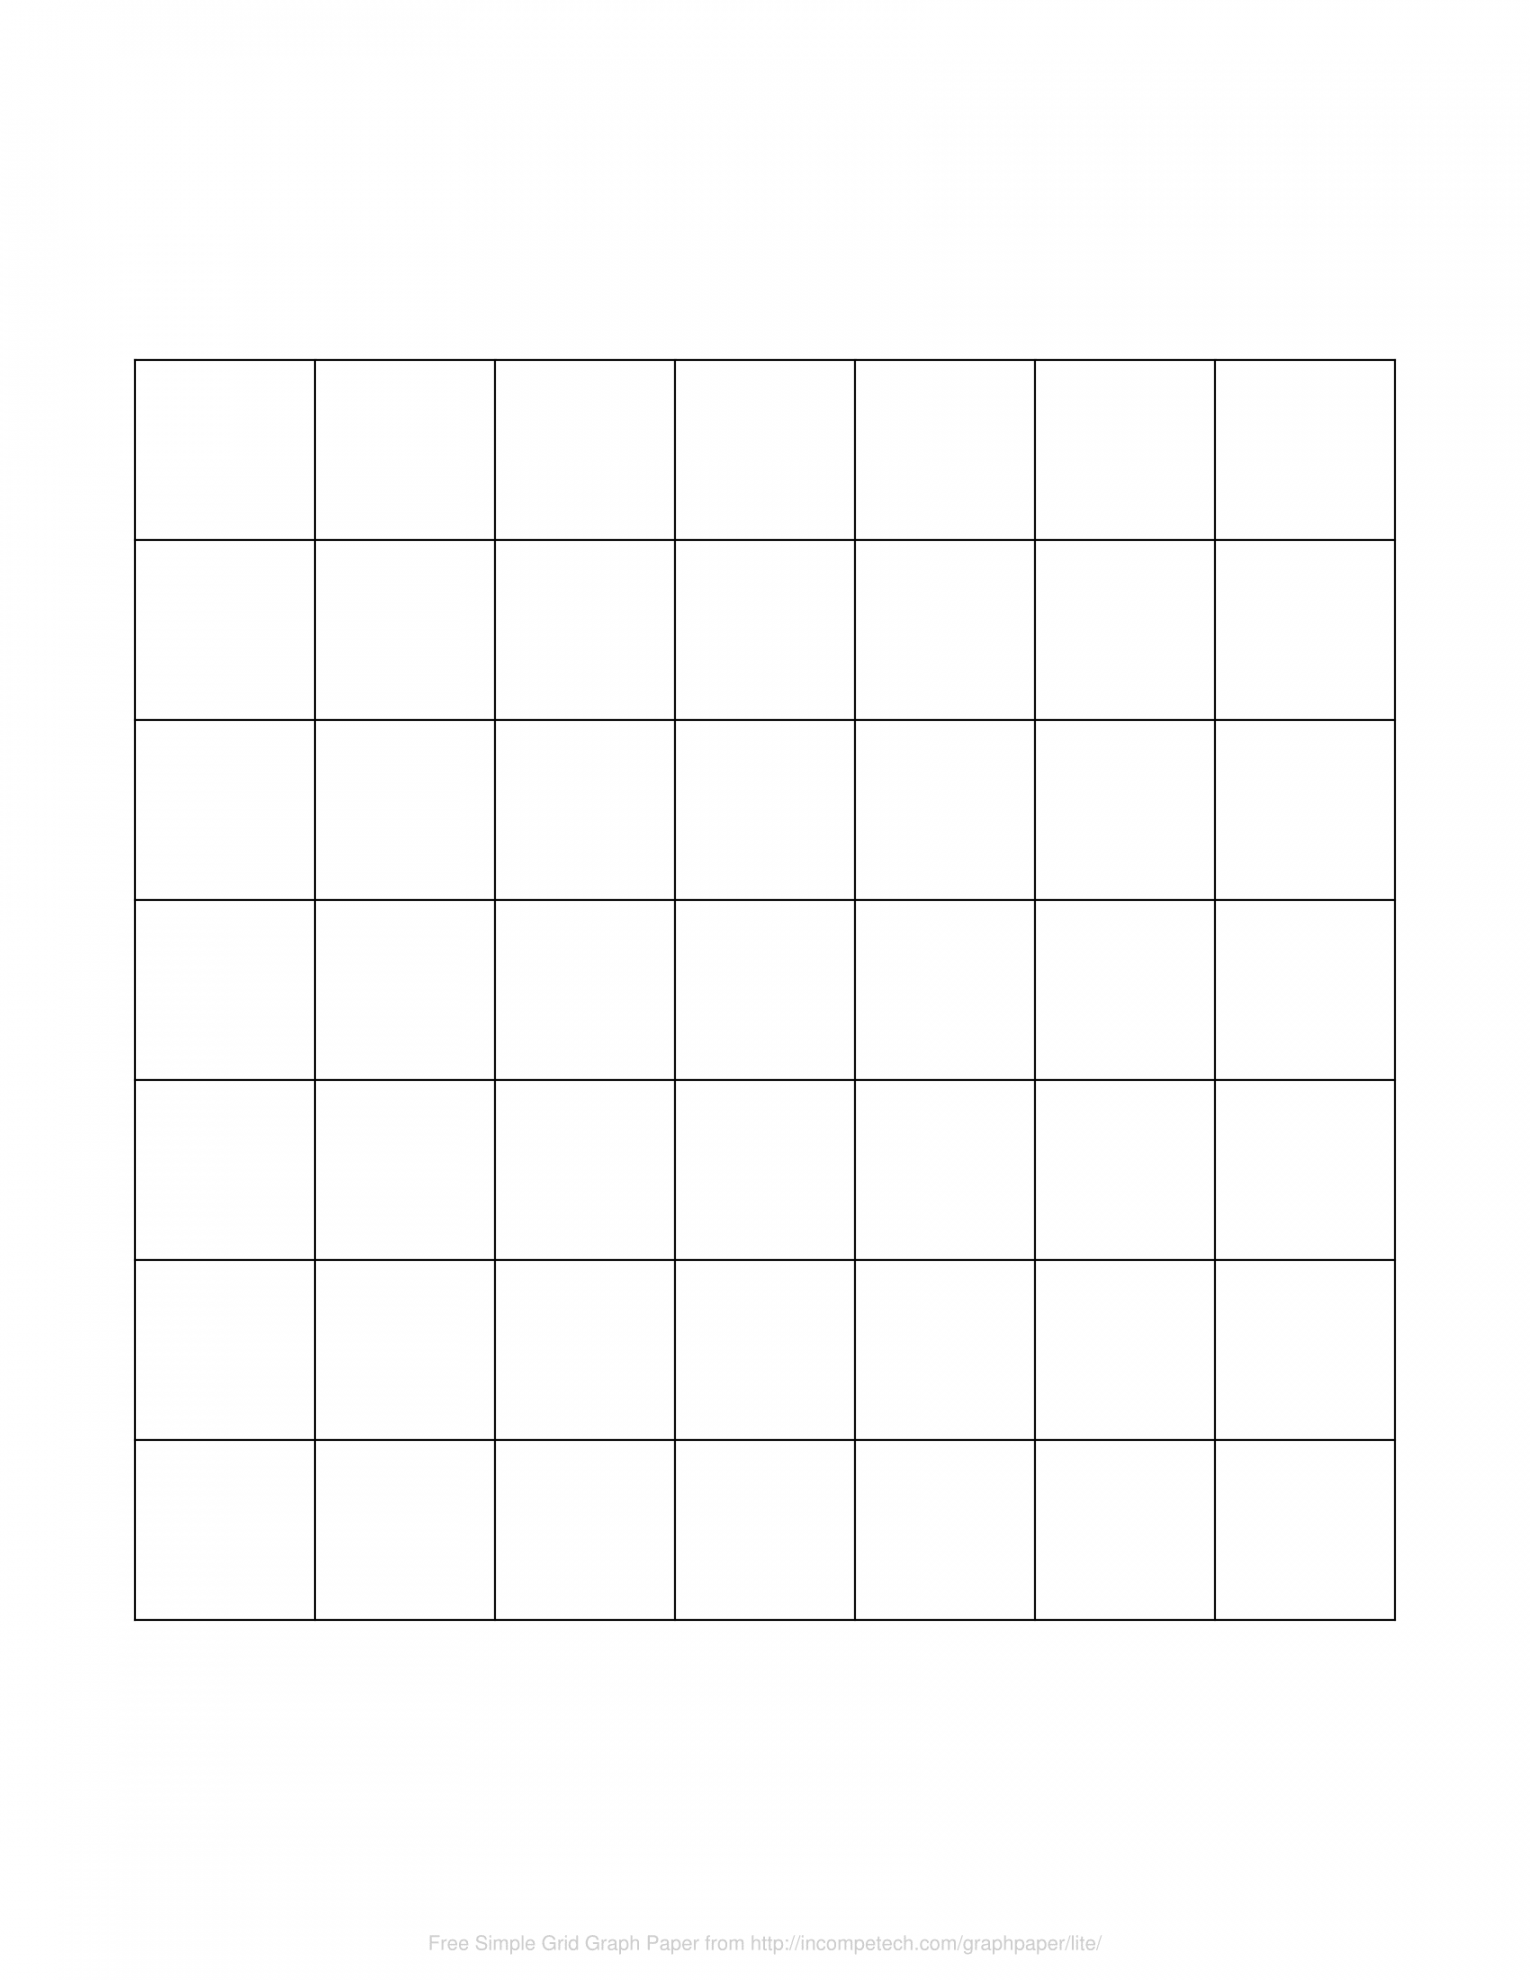 Square Grid Free Printable - FREE Printables - 50 Square Grid Free Printable